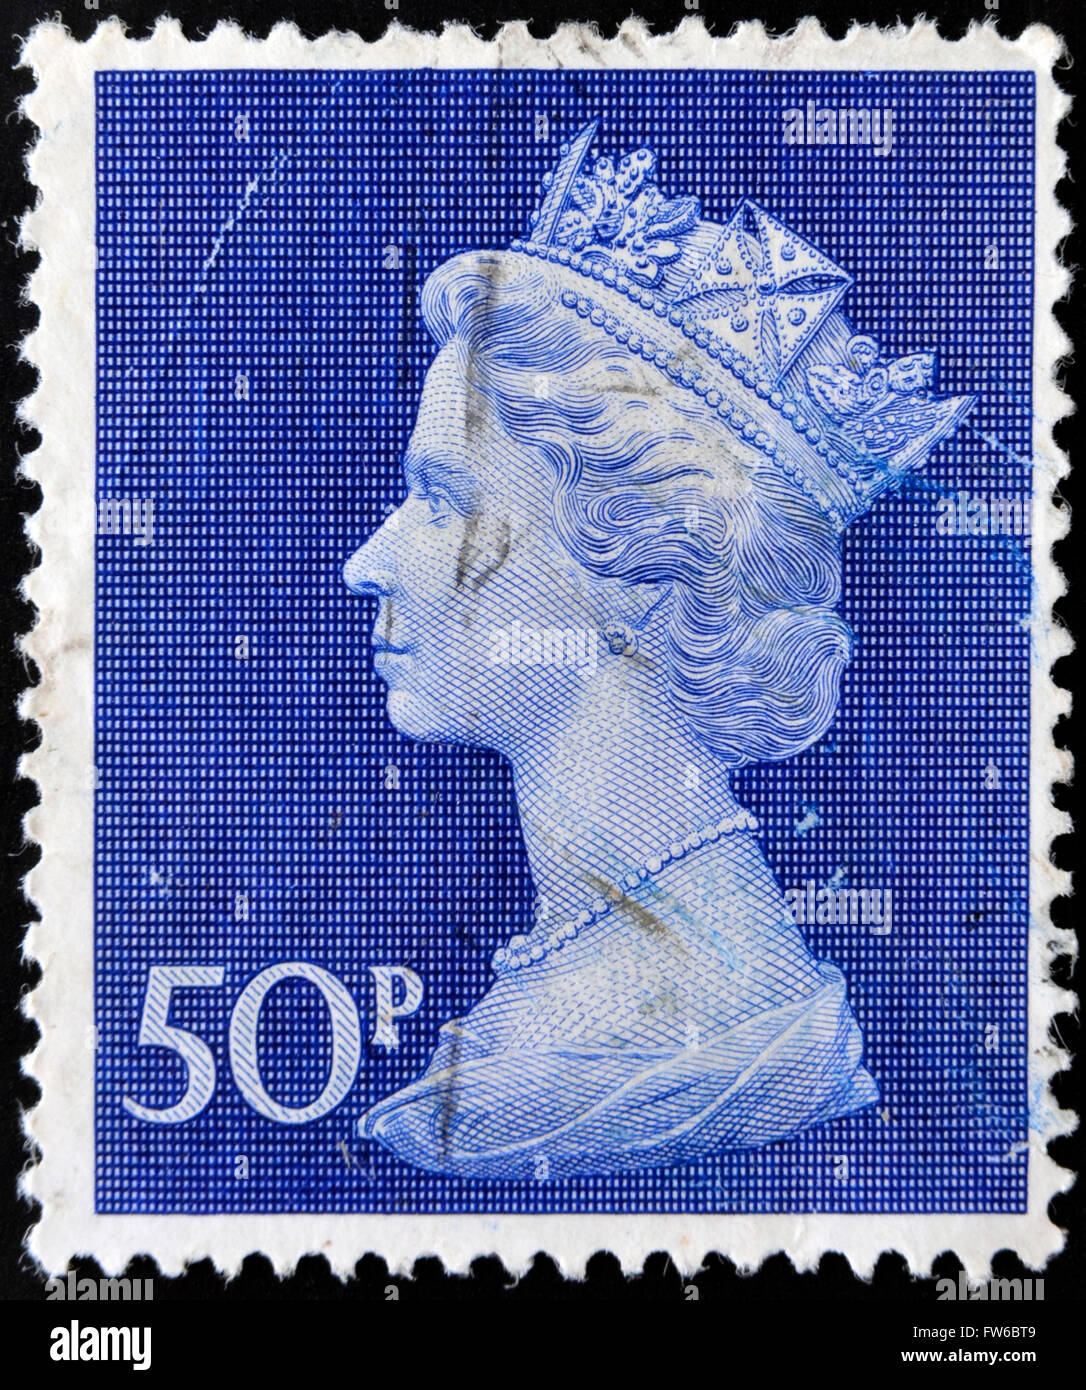 Vereinigtes Konigreich Circa 1970 Eine Englische Briefmarke Gedruckt In Grossbritannien Zeigt Portrat Von Queen Elizabeth Ca 1970 Stockfotografie Alamy